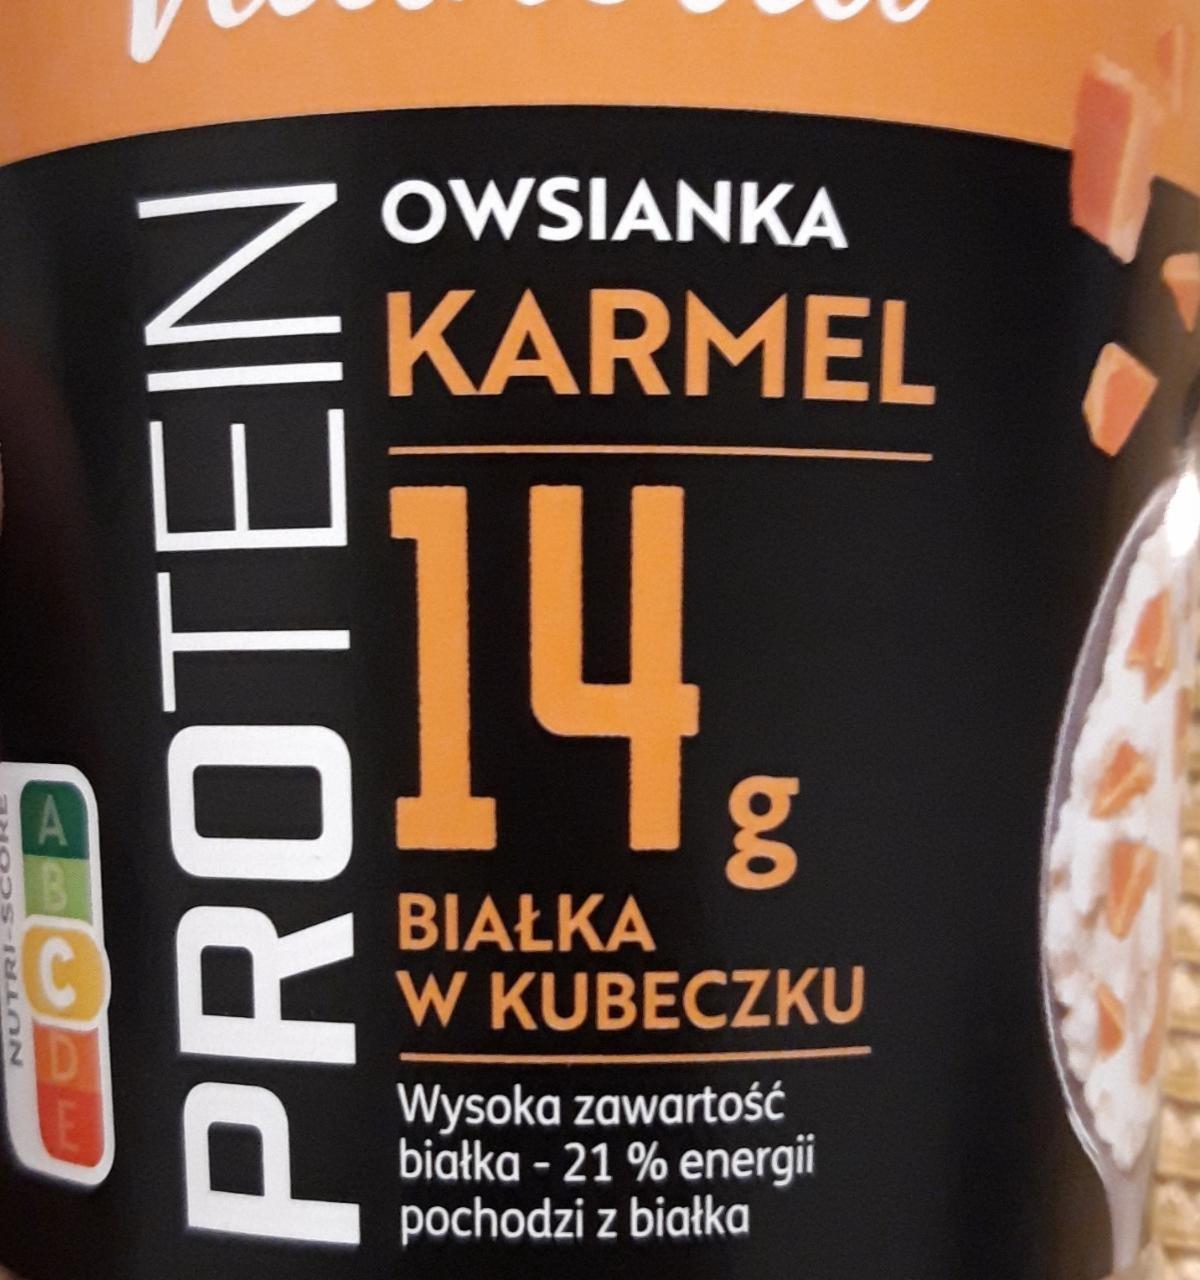 Zdjęcia - owsianka karmel 14g białka